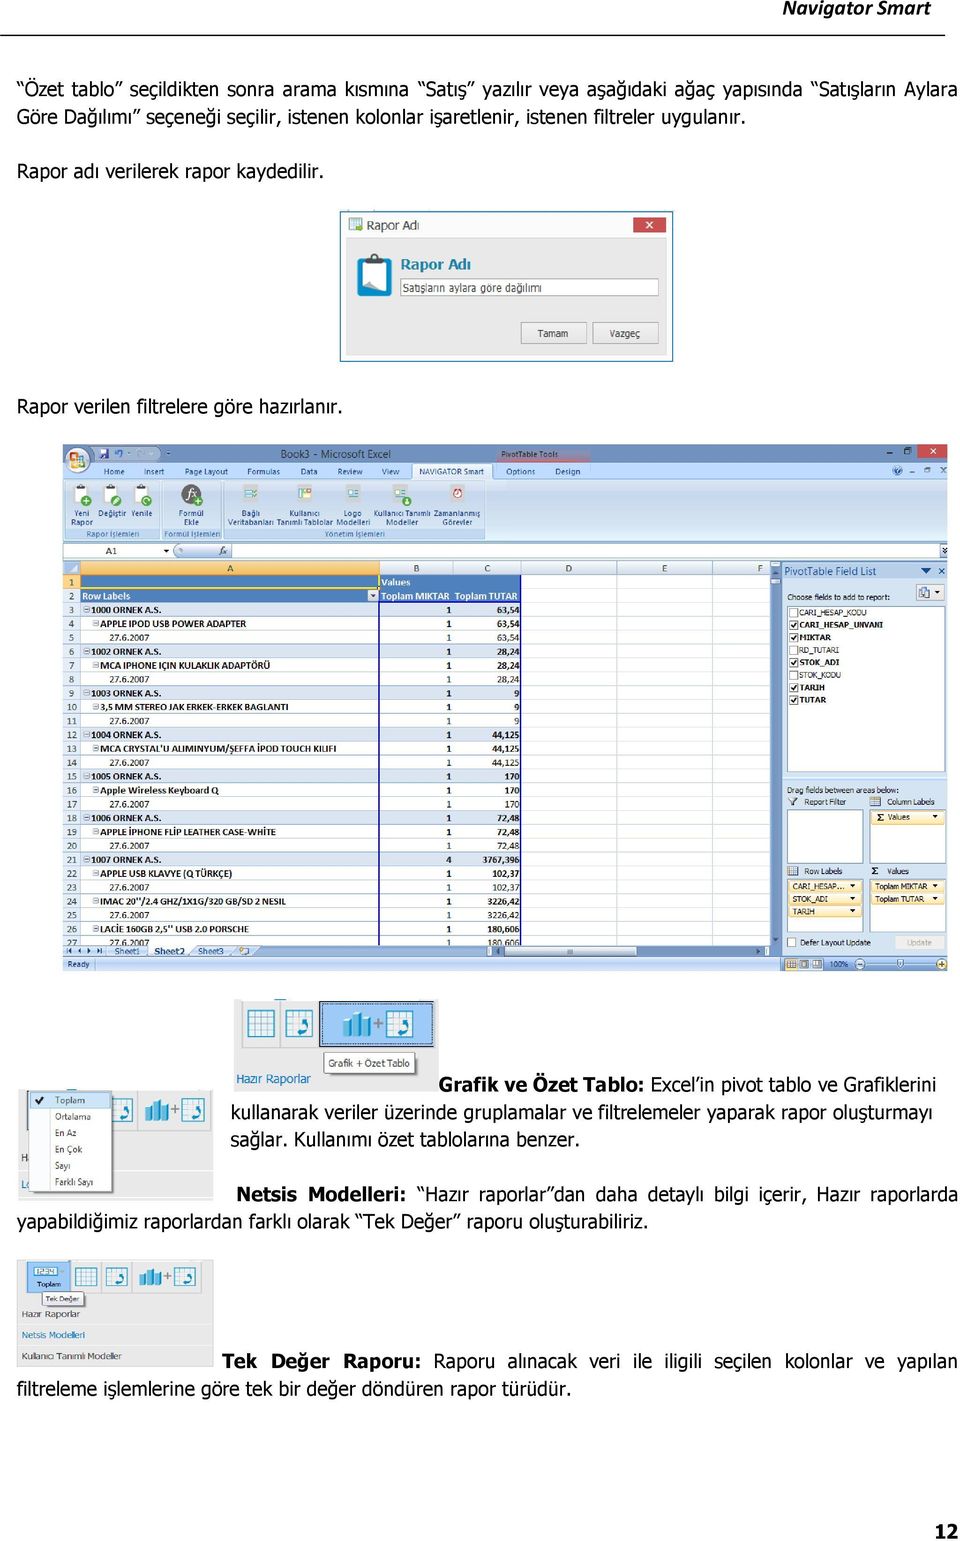 Grafik ve Özet Tablo: Excel in pivot tablo ve Grafiklerini kullanarak veriler üzerinde gruplamalar ve filtrelemeler yaparak rapor oluşturmayı sağlar. Kullanımı özet tablolarına benzer.